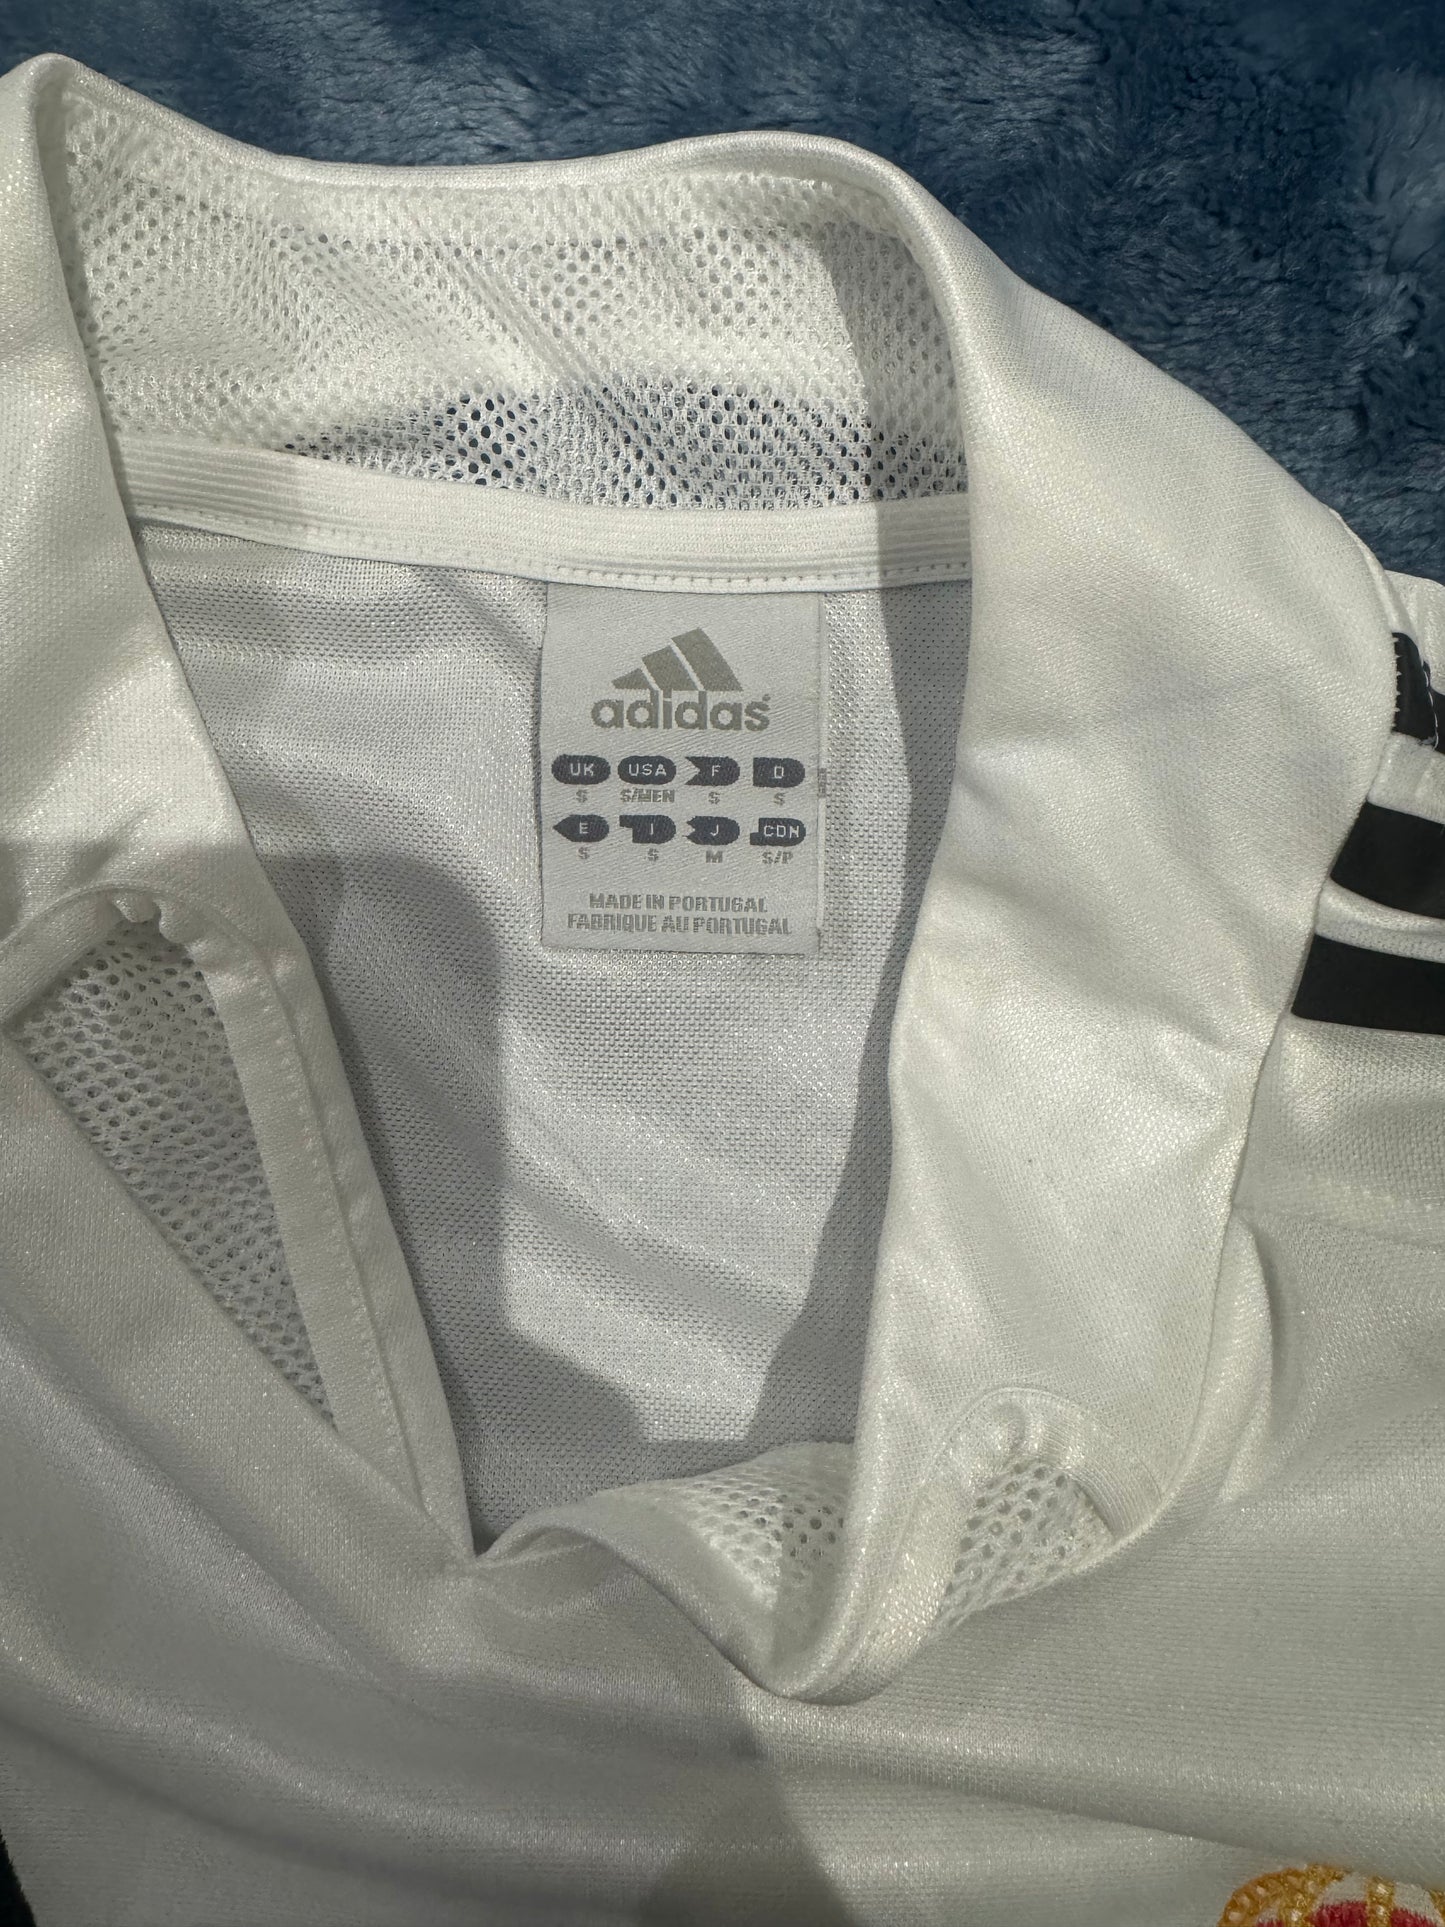 Vintage Real Madrid 2004-05 Adidas Football Jersey Camiseta Fútbol Size - (S) / NUEVA CON DETALLES